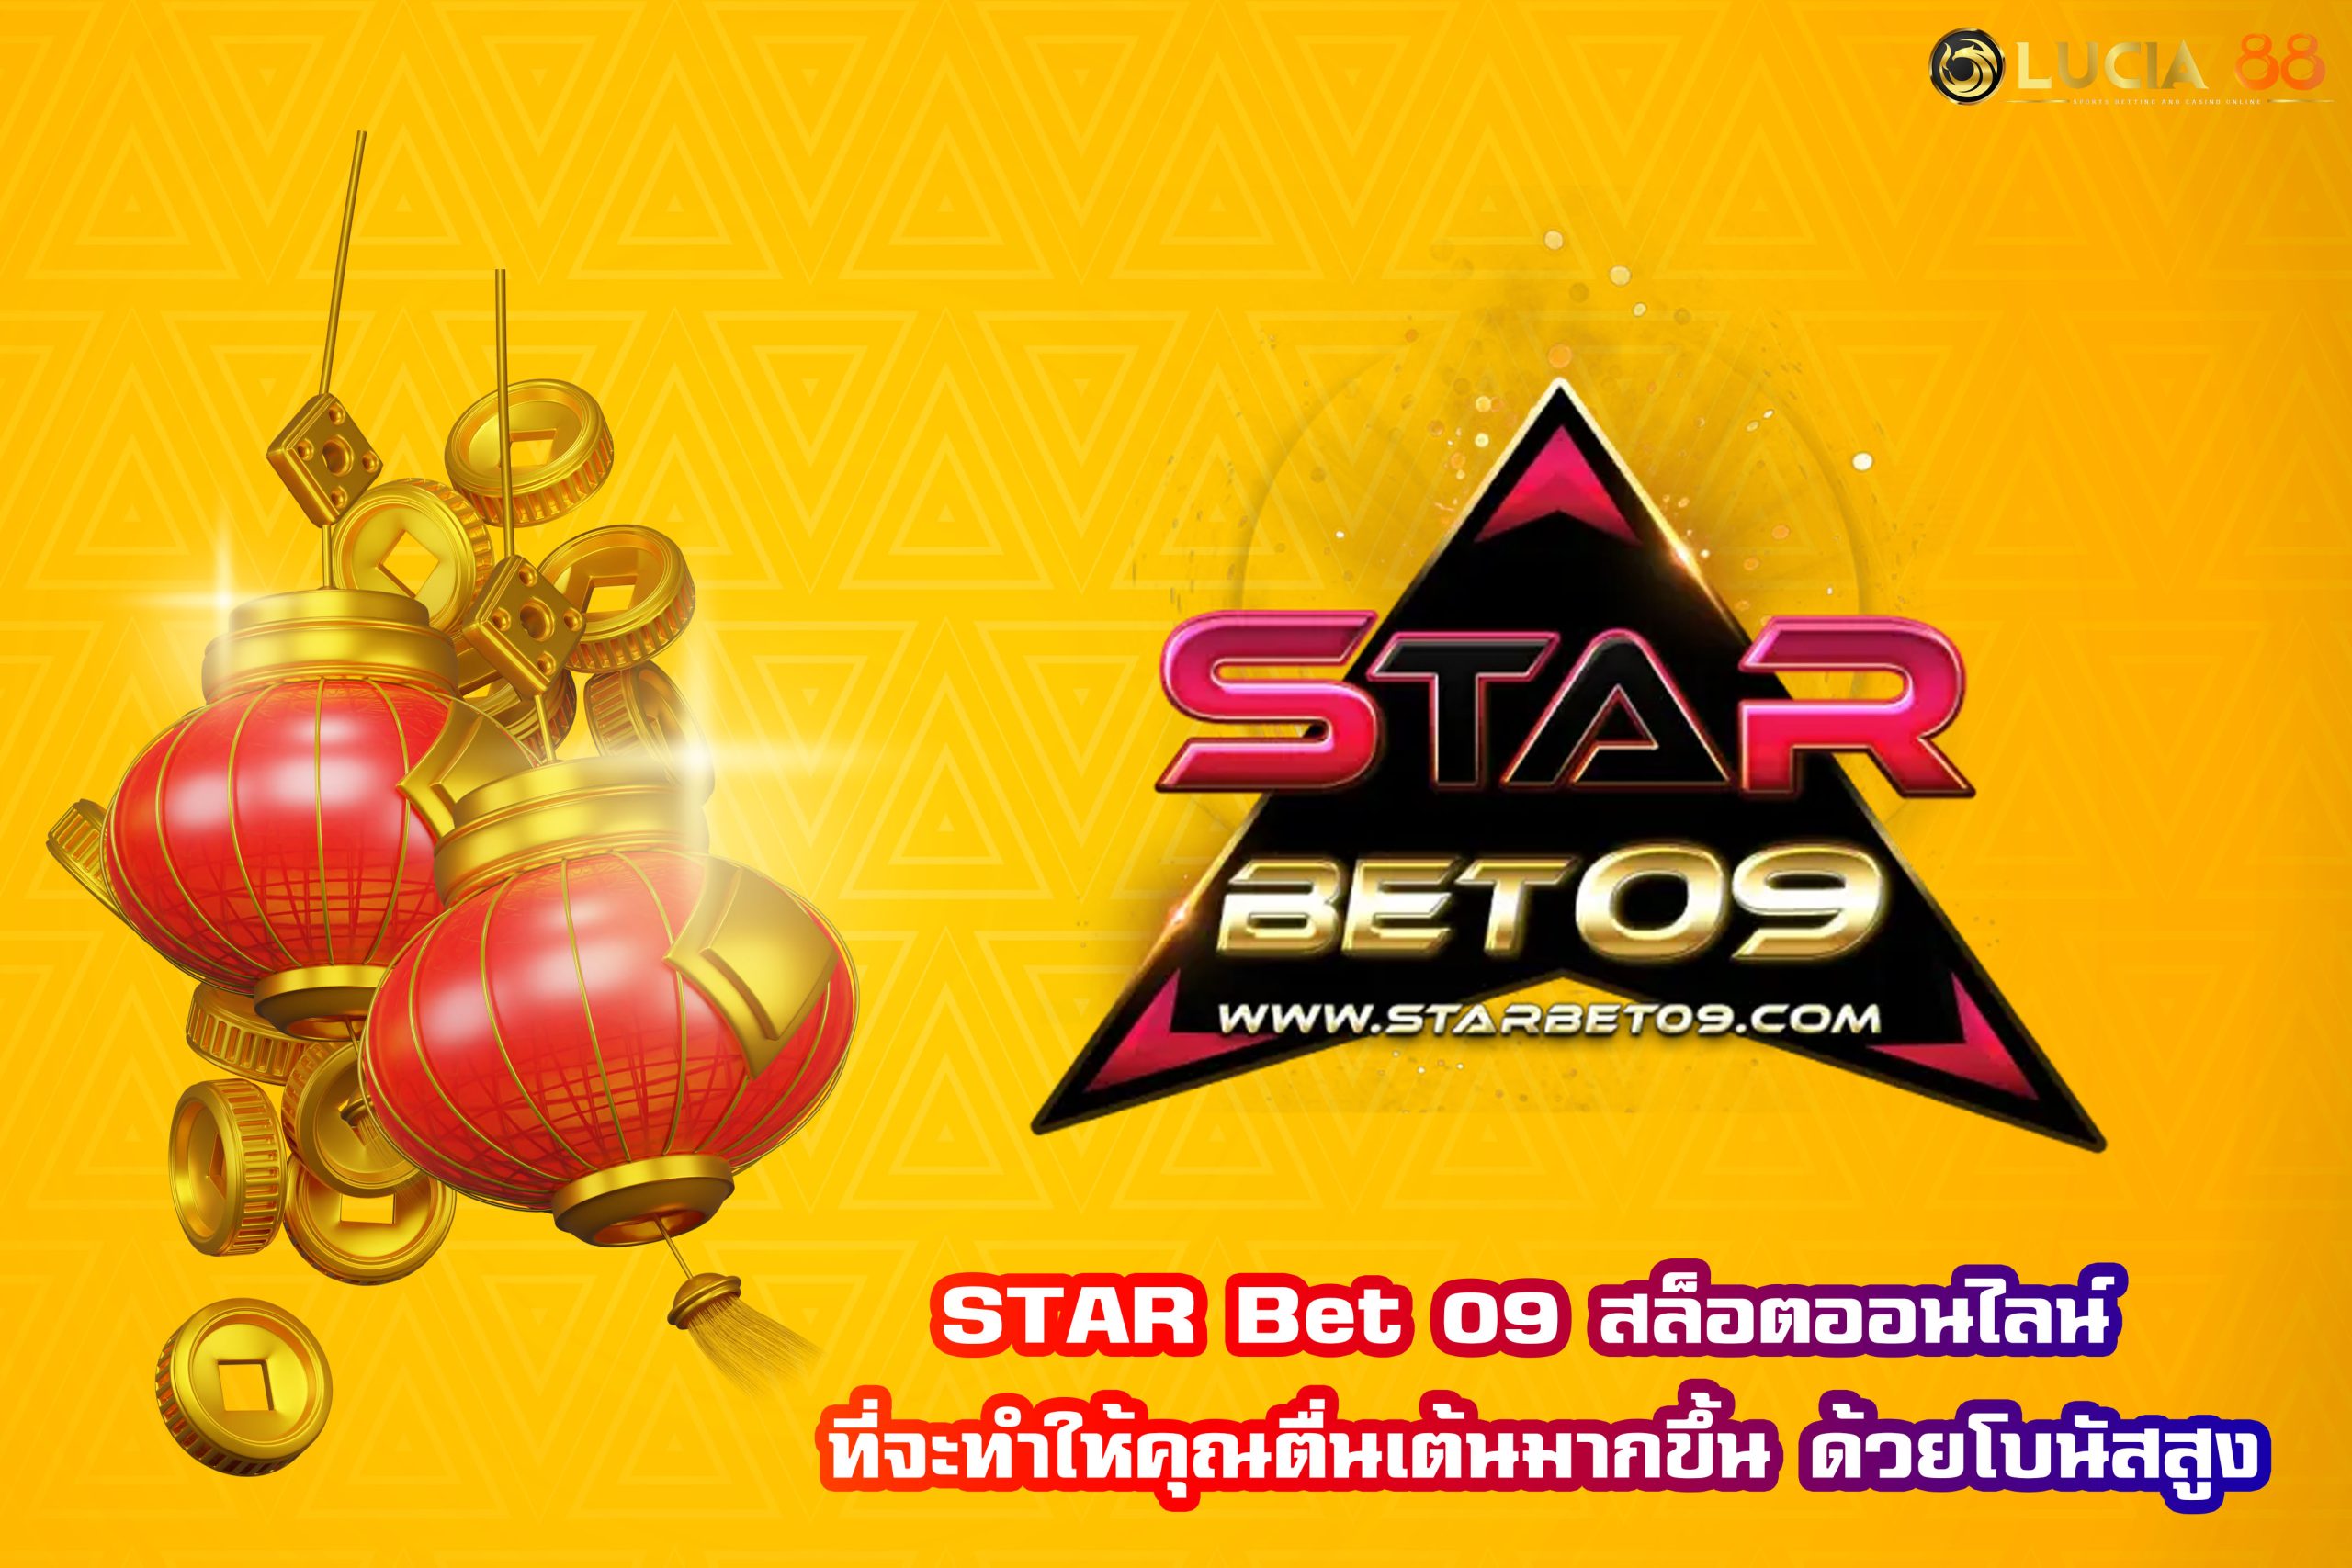 STAR Bet 09 สล็อตออนไลน์ ที่จะทำให้คุณตื่นเต้นมากขึ้น ด้วยโบนัสสูง